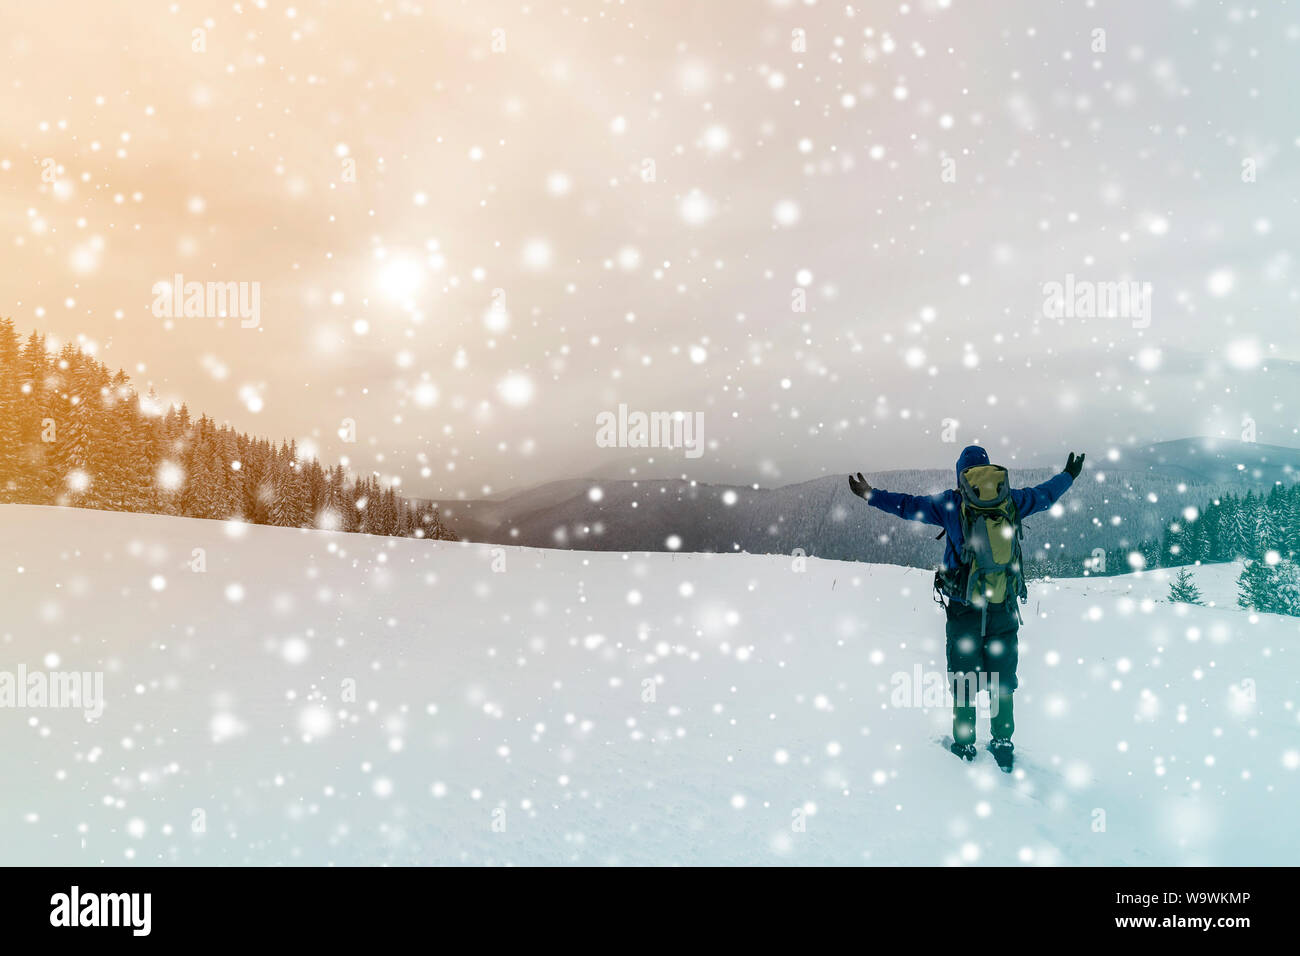 Vue arrière de l'randonneur dans des vêtements chauds avec sac à dos debout avec les bras levés sur la compensation couverte de neige sur la montagne de la forêt d'épinettes et ciel nuageux Banque D'Images